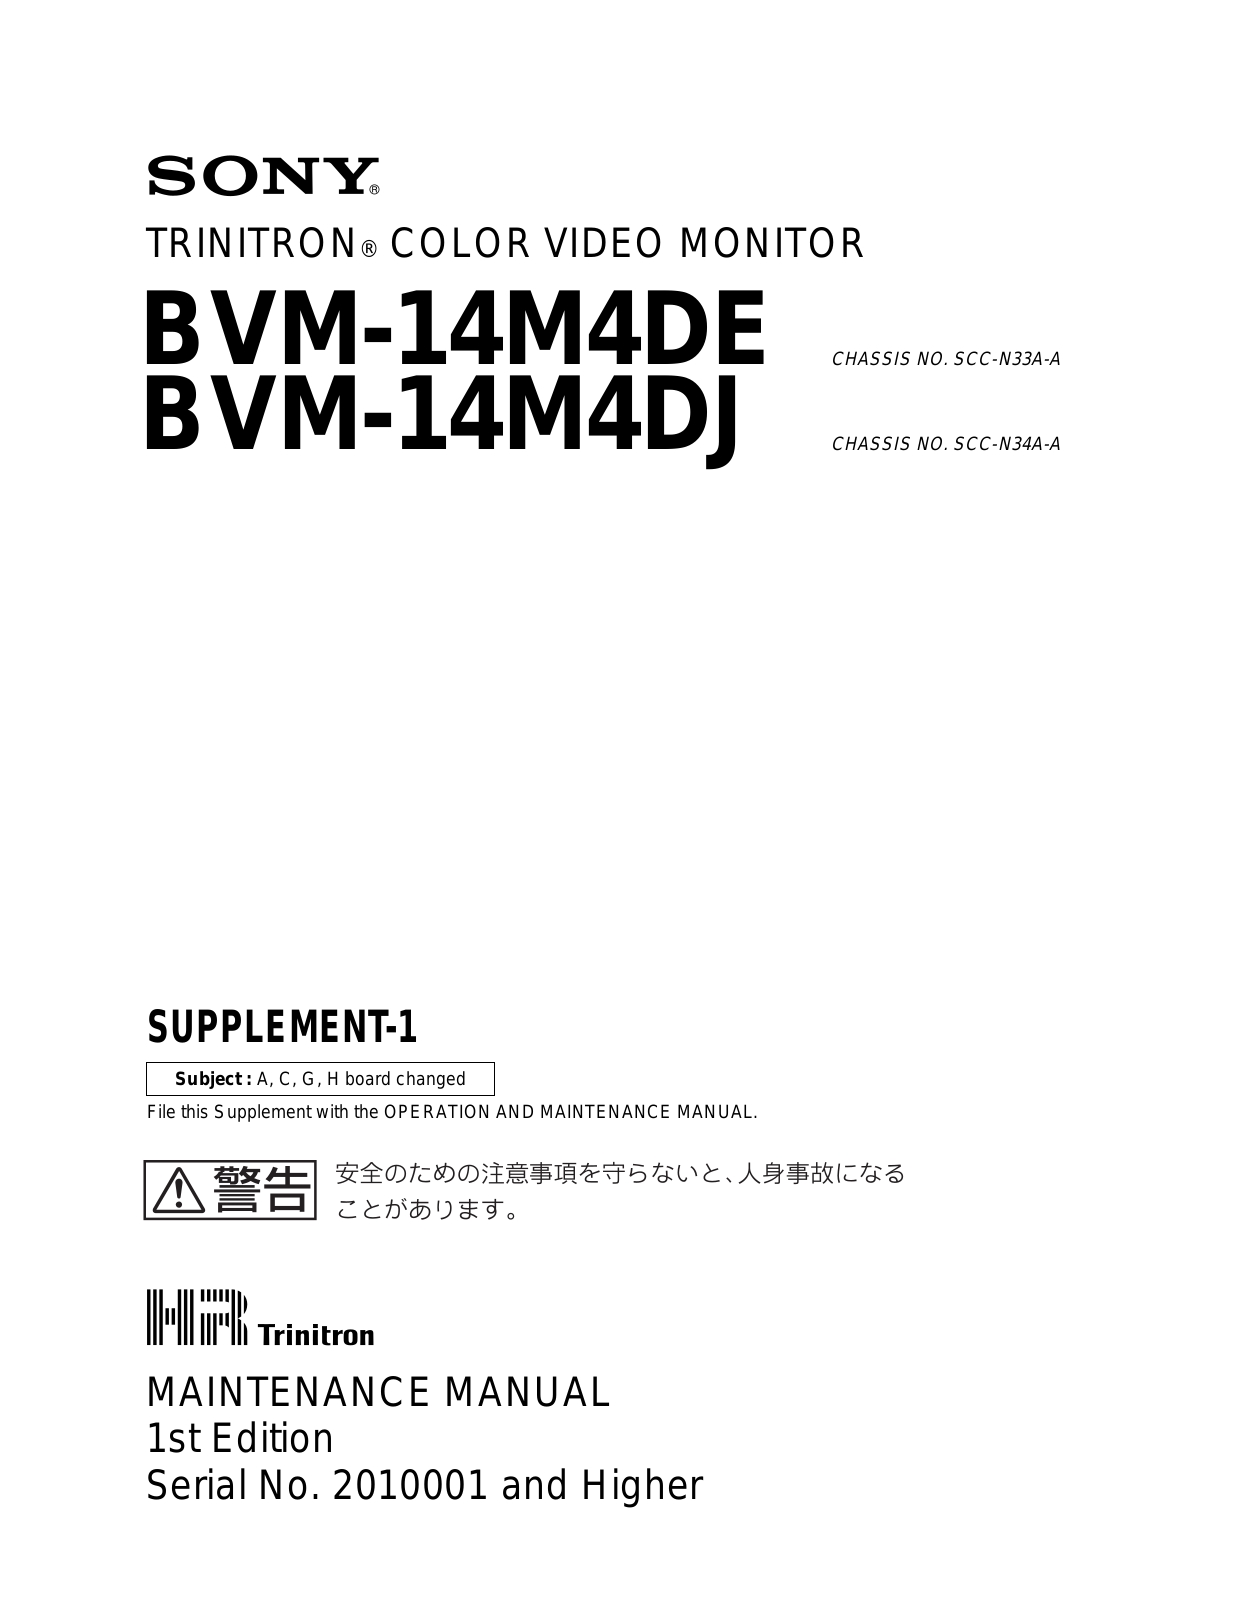 Sony BVM-14M4D Supplement